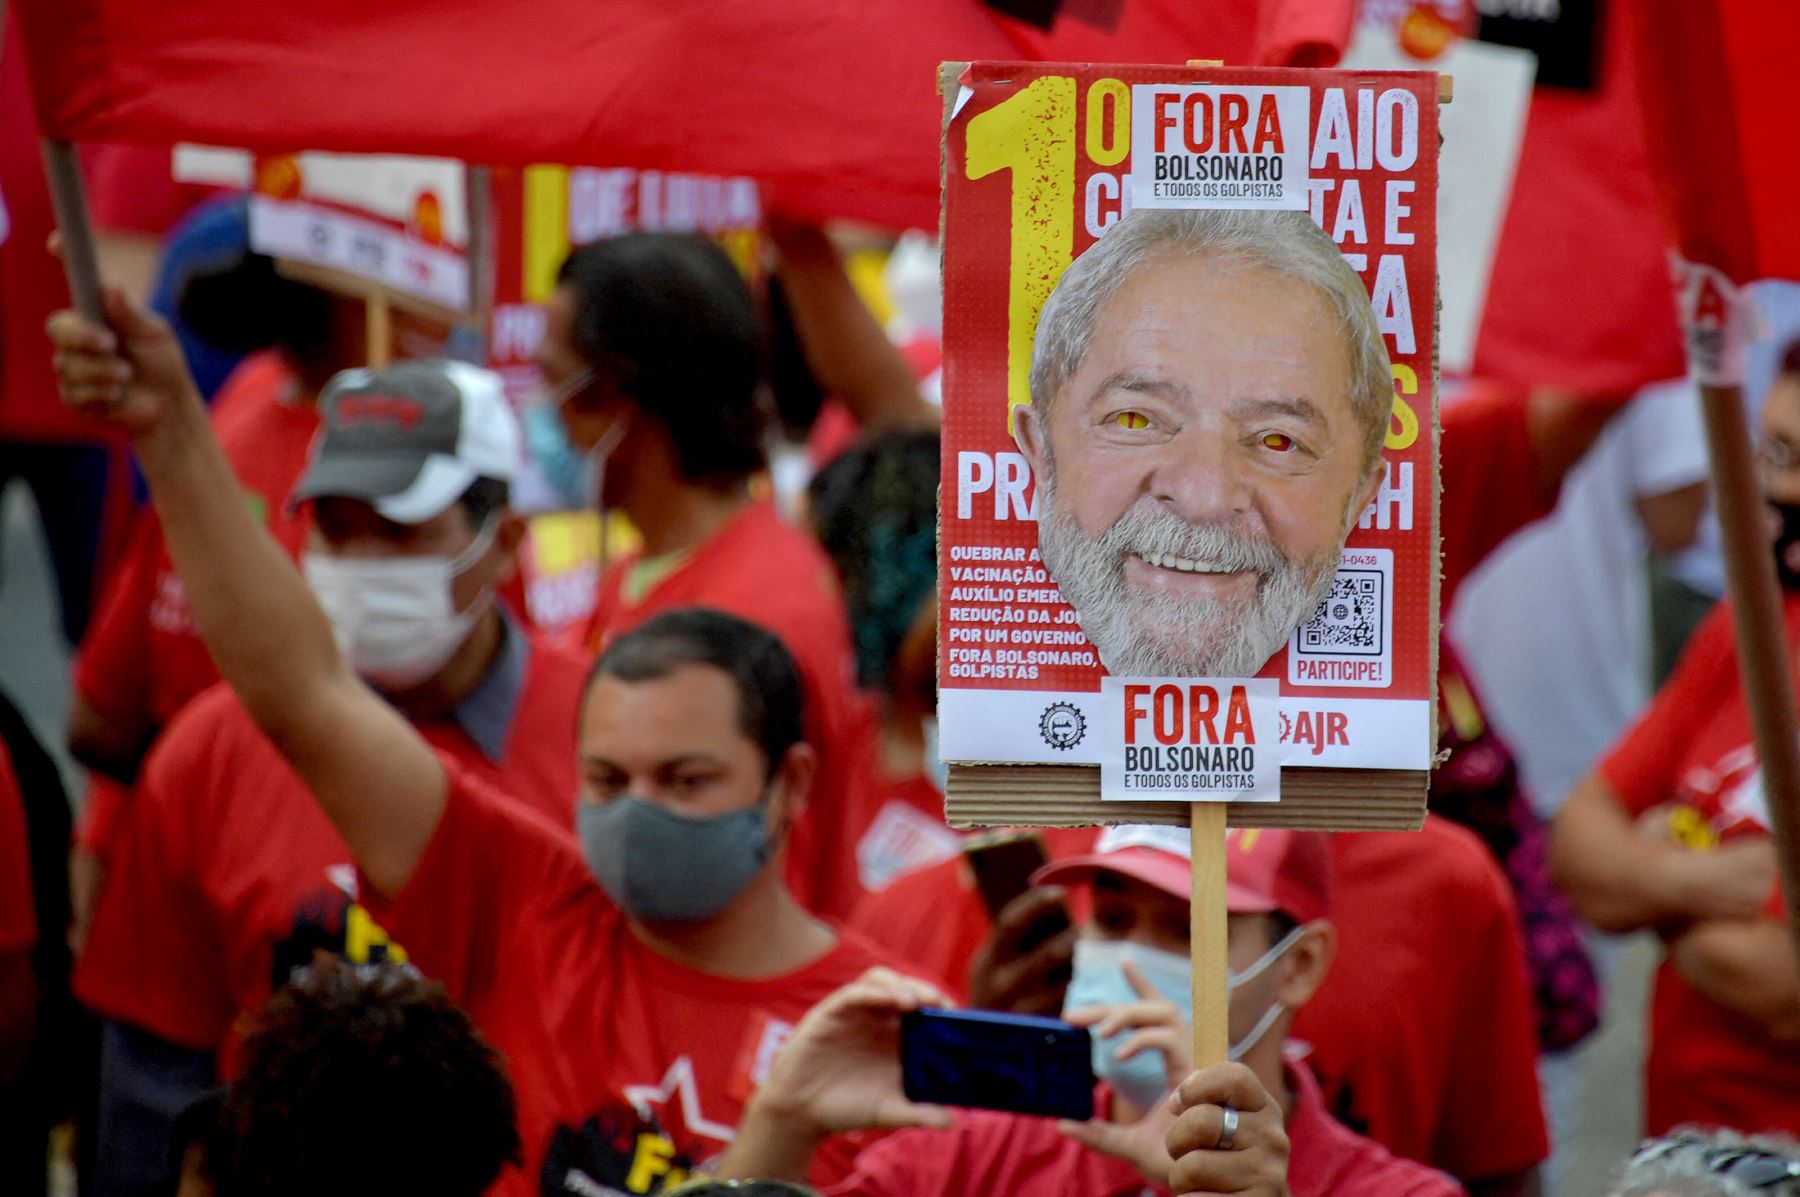 Lula y Bolsonaro, pese a encabezar las encuestas, tienen también los mayores índices de rechazo entre el electorado, de 36% y 54% respectivamente. Foto: AFP